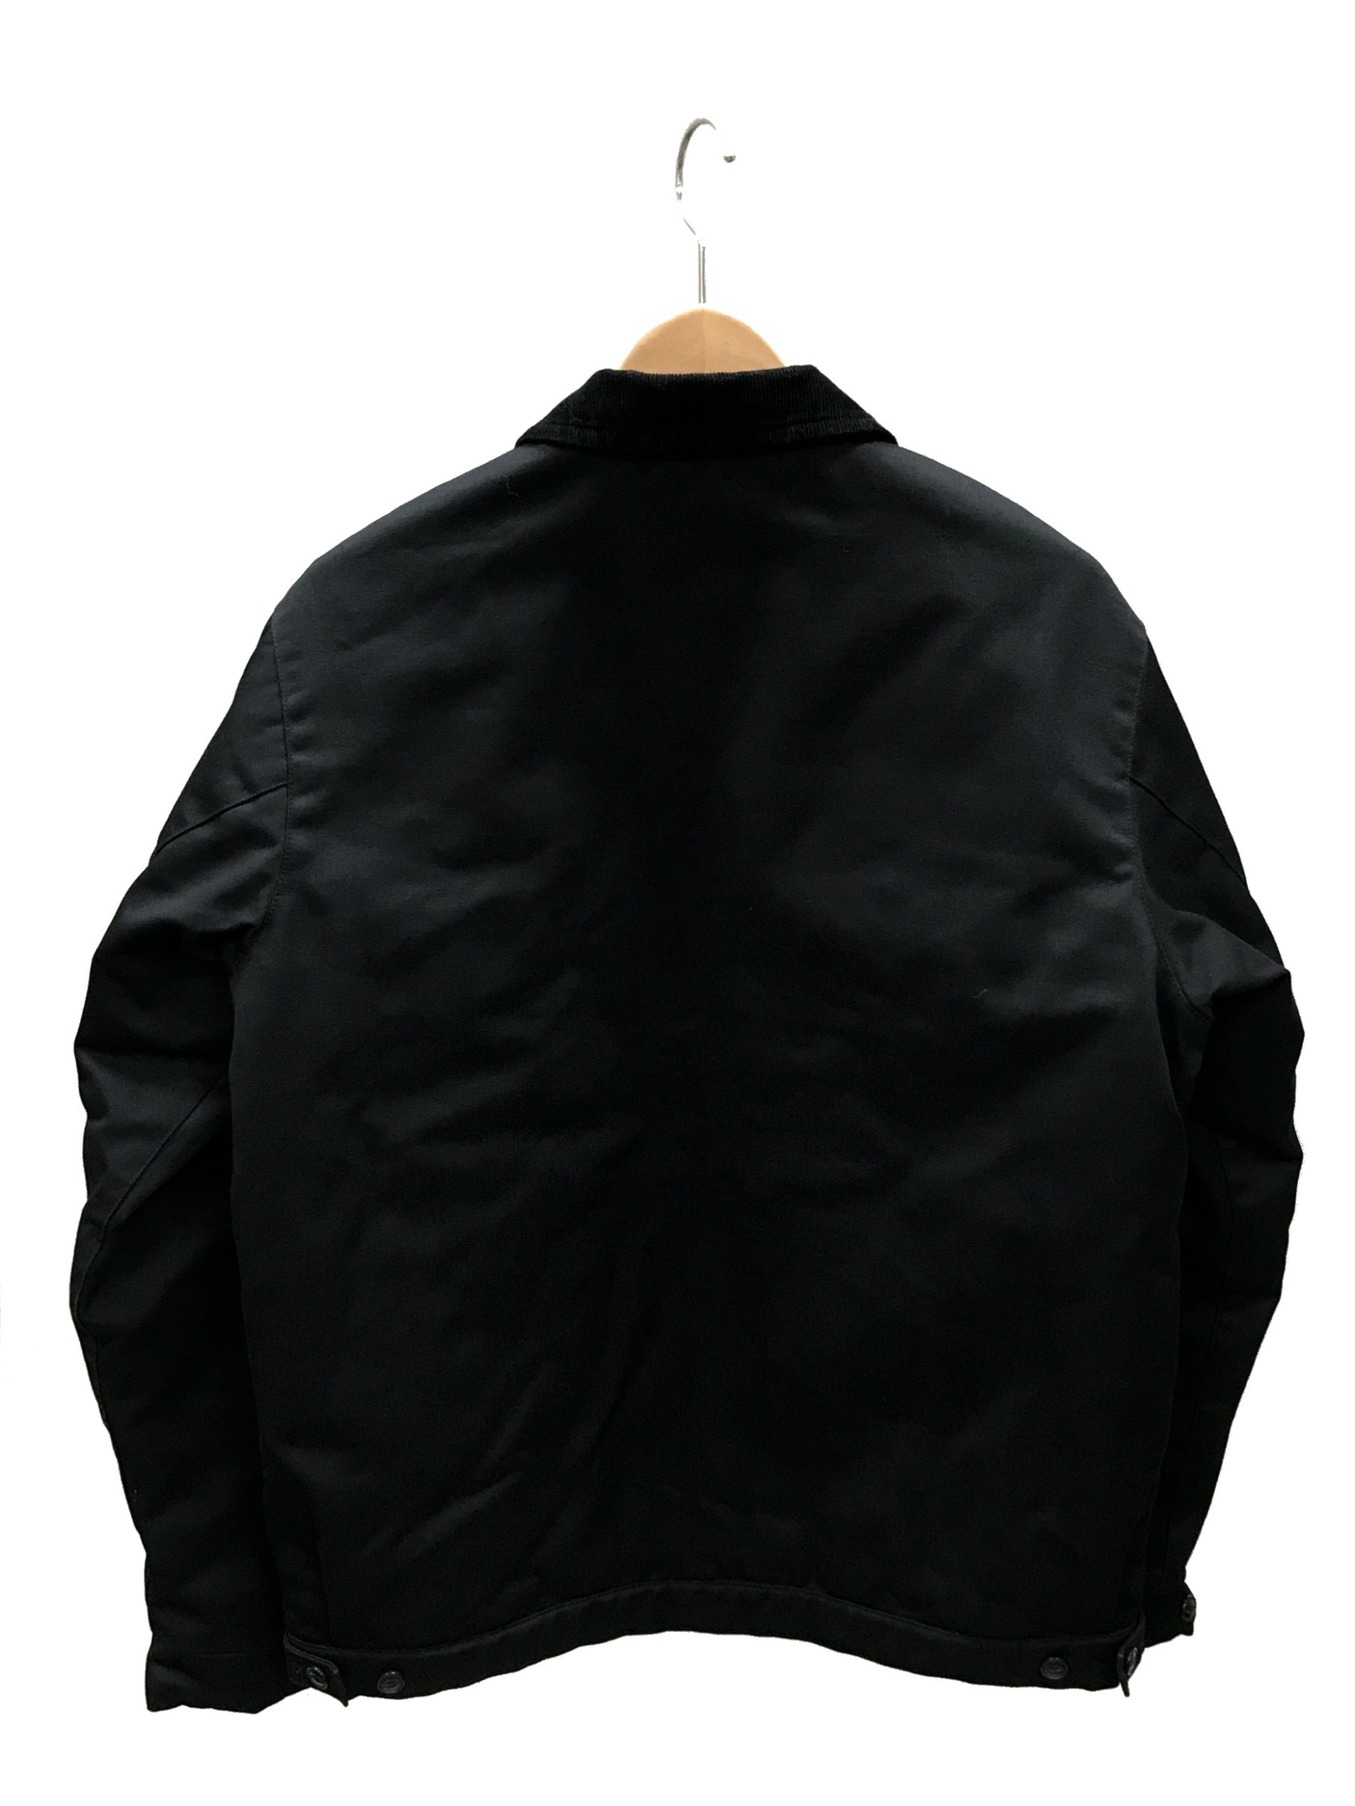 BLUCO WORK GARMENT (ブルコワークガーメント) ワークジャケット ブラック サイズ:M